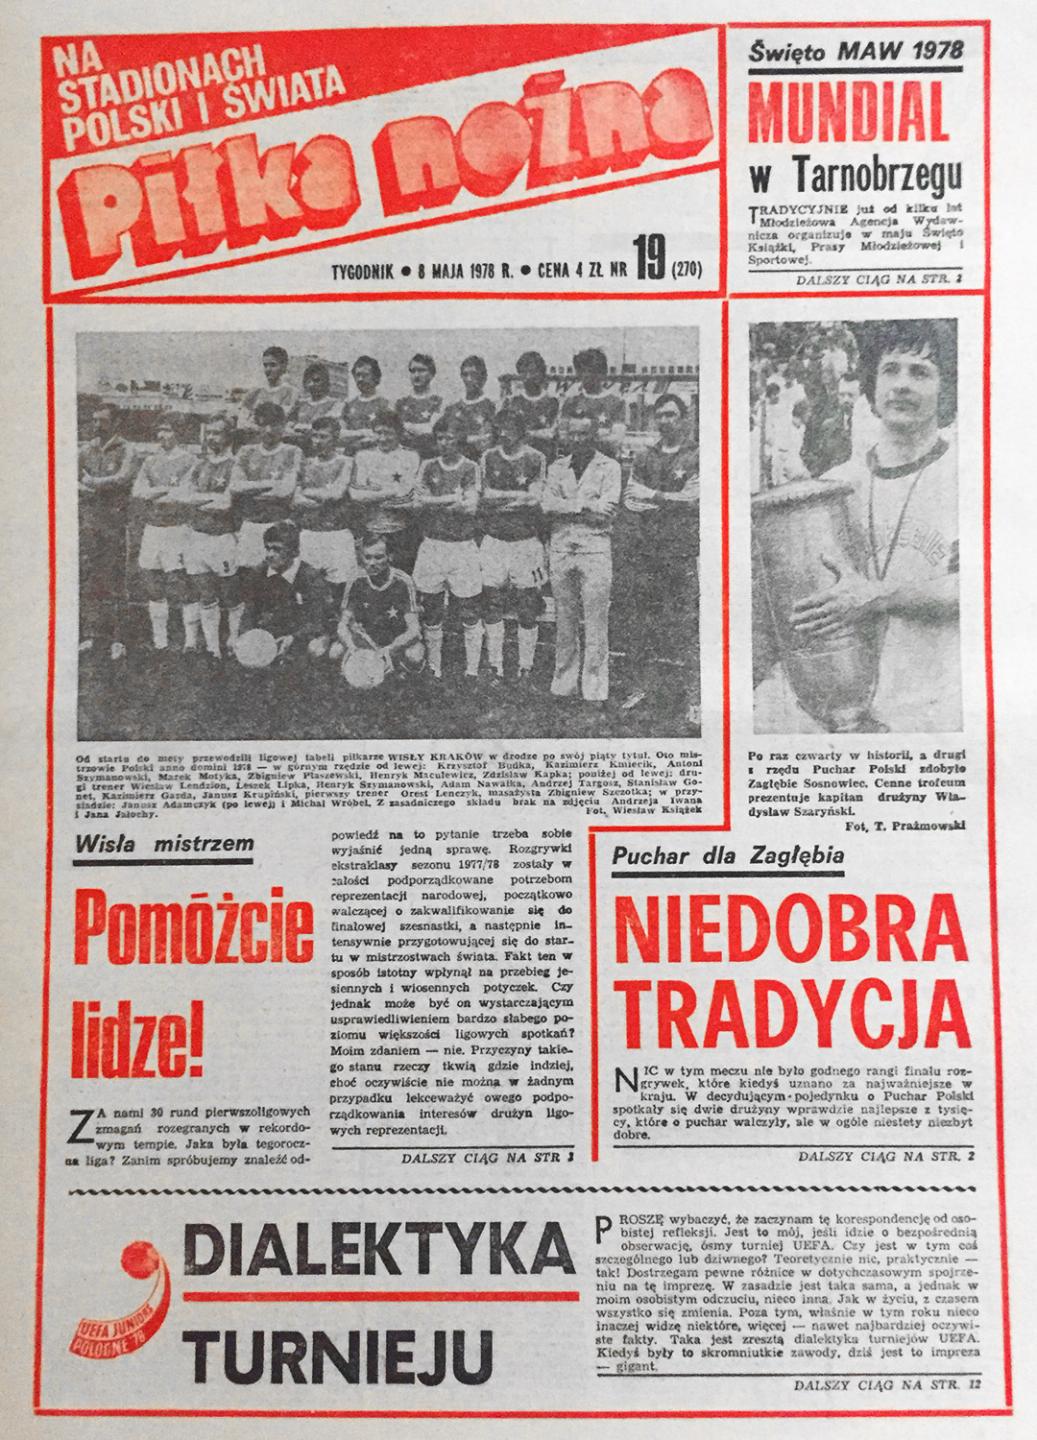 Okładka "Piłki Nożnej" po finale PP Zagłębie S. - Piast (1978)